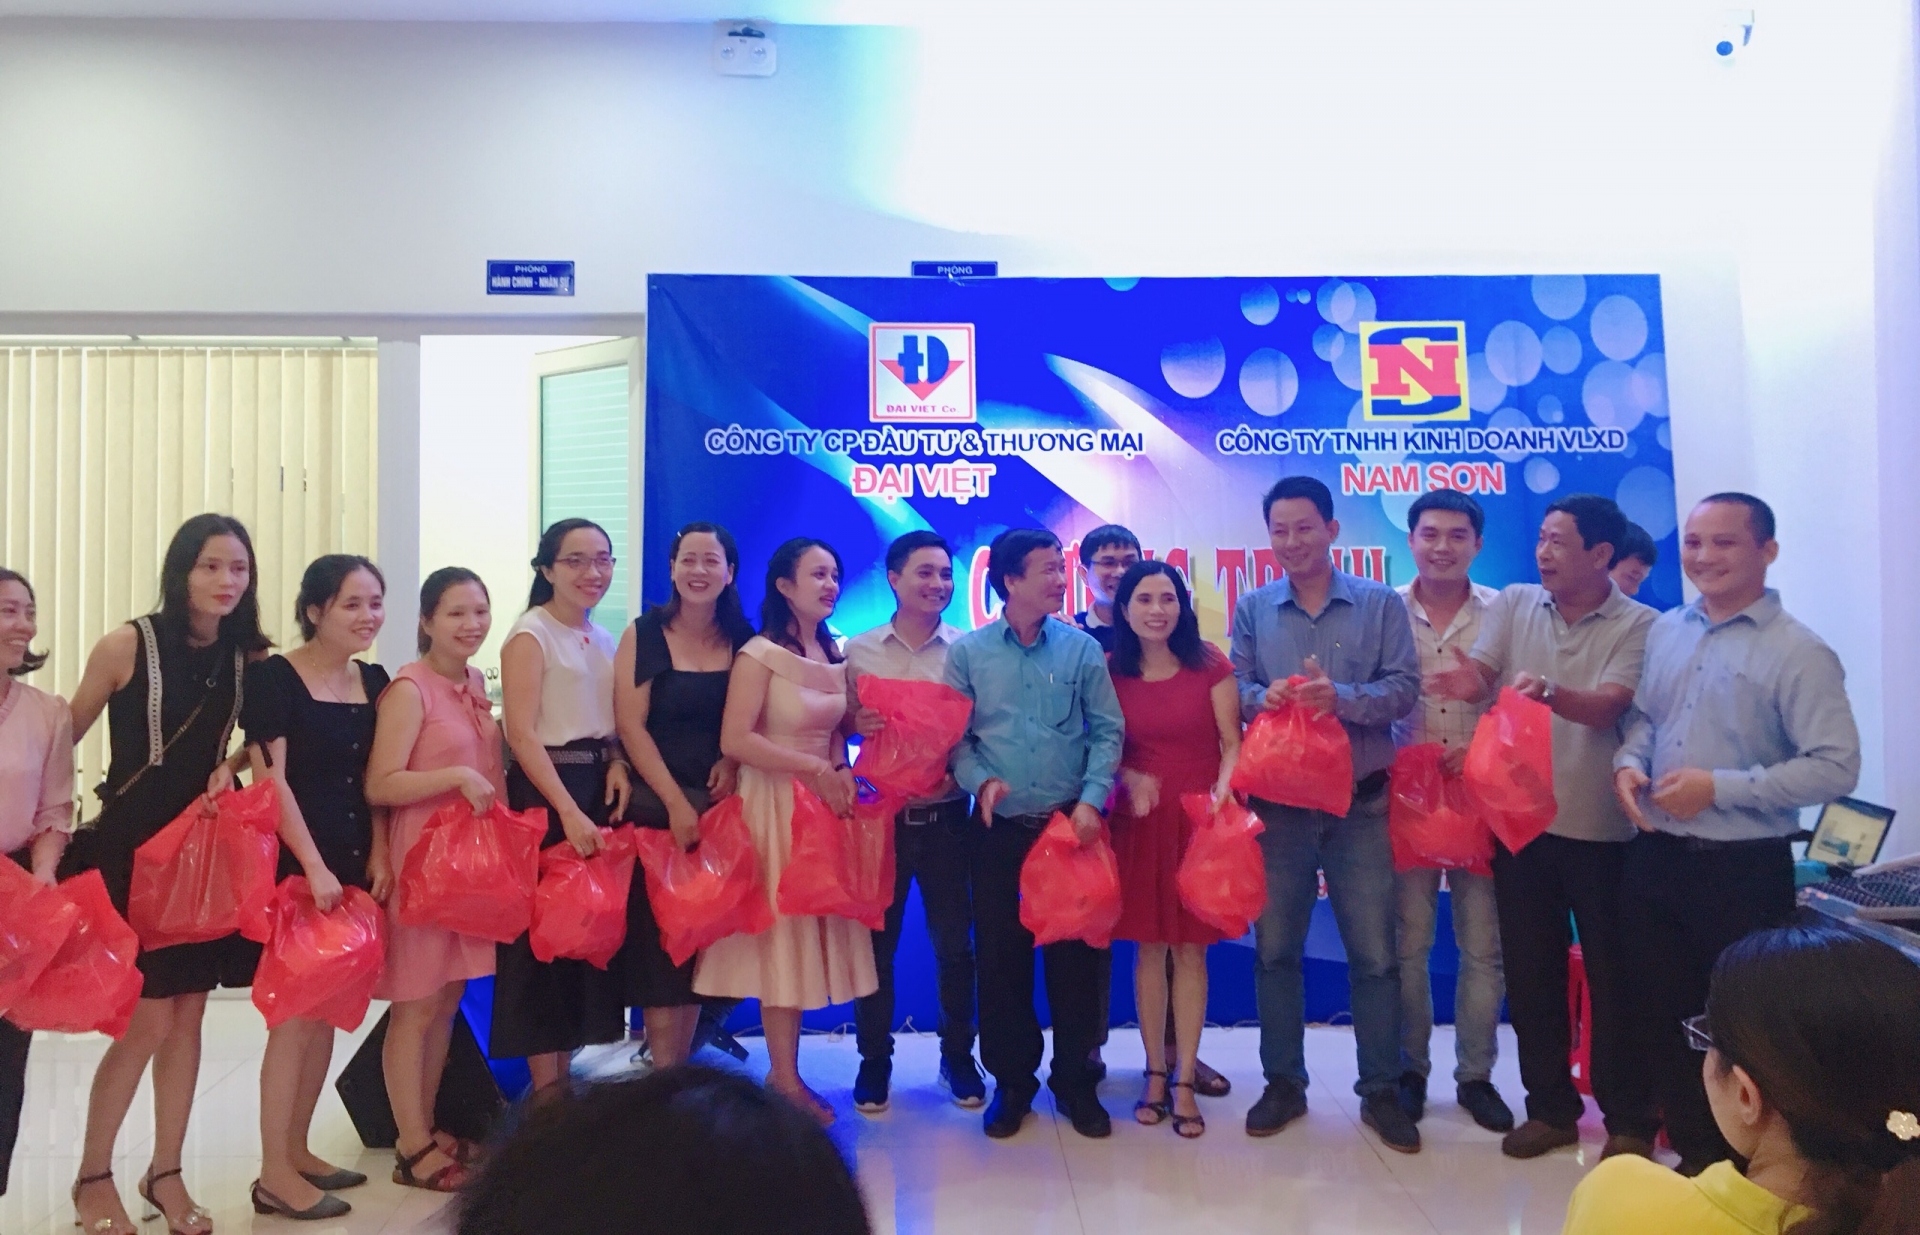 Tại buổi giao lưu Nhà phân phối xi măng Đại Việt tặng cho đối tác Công ty Nam Sơn những phần quà ý nghĩa.